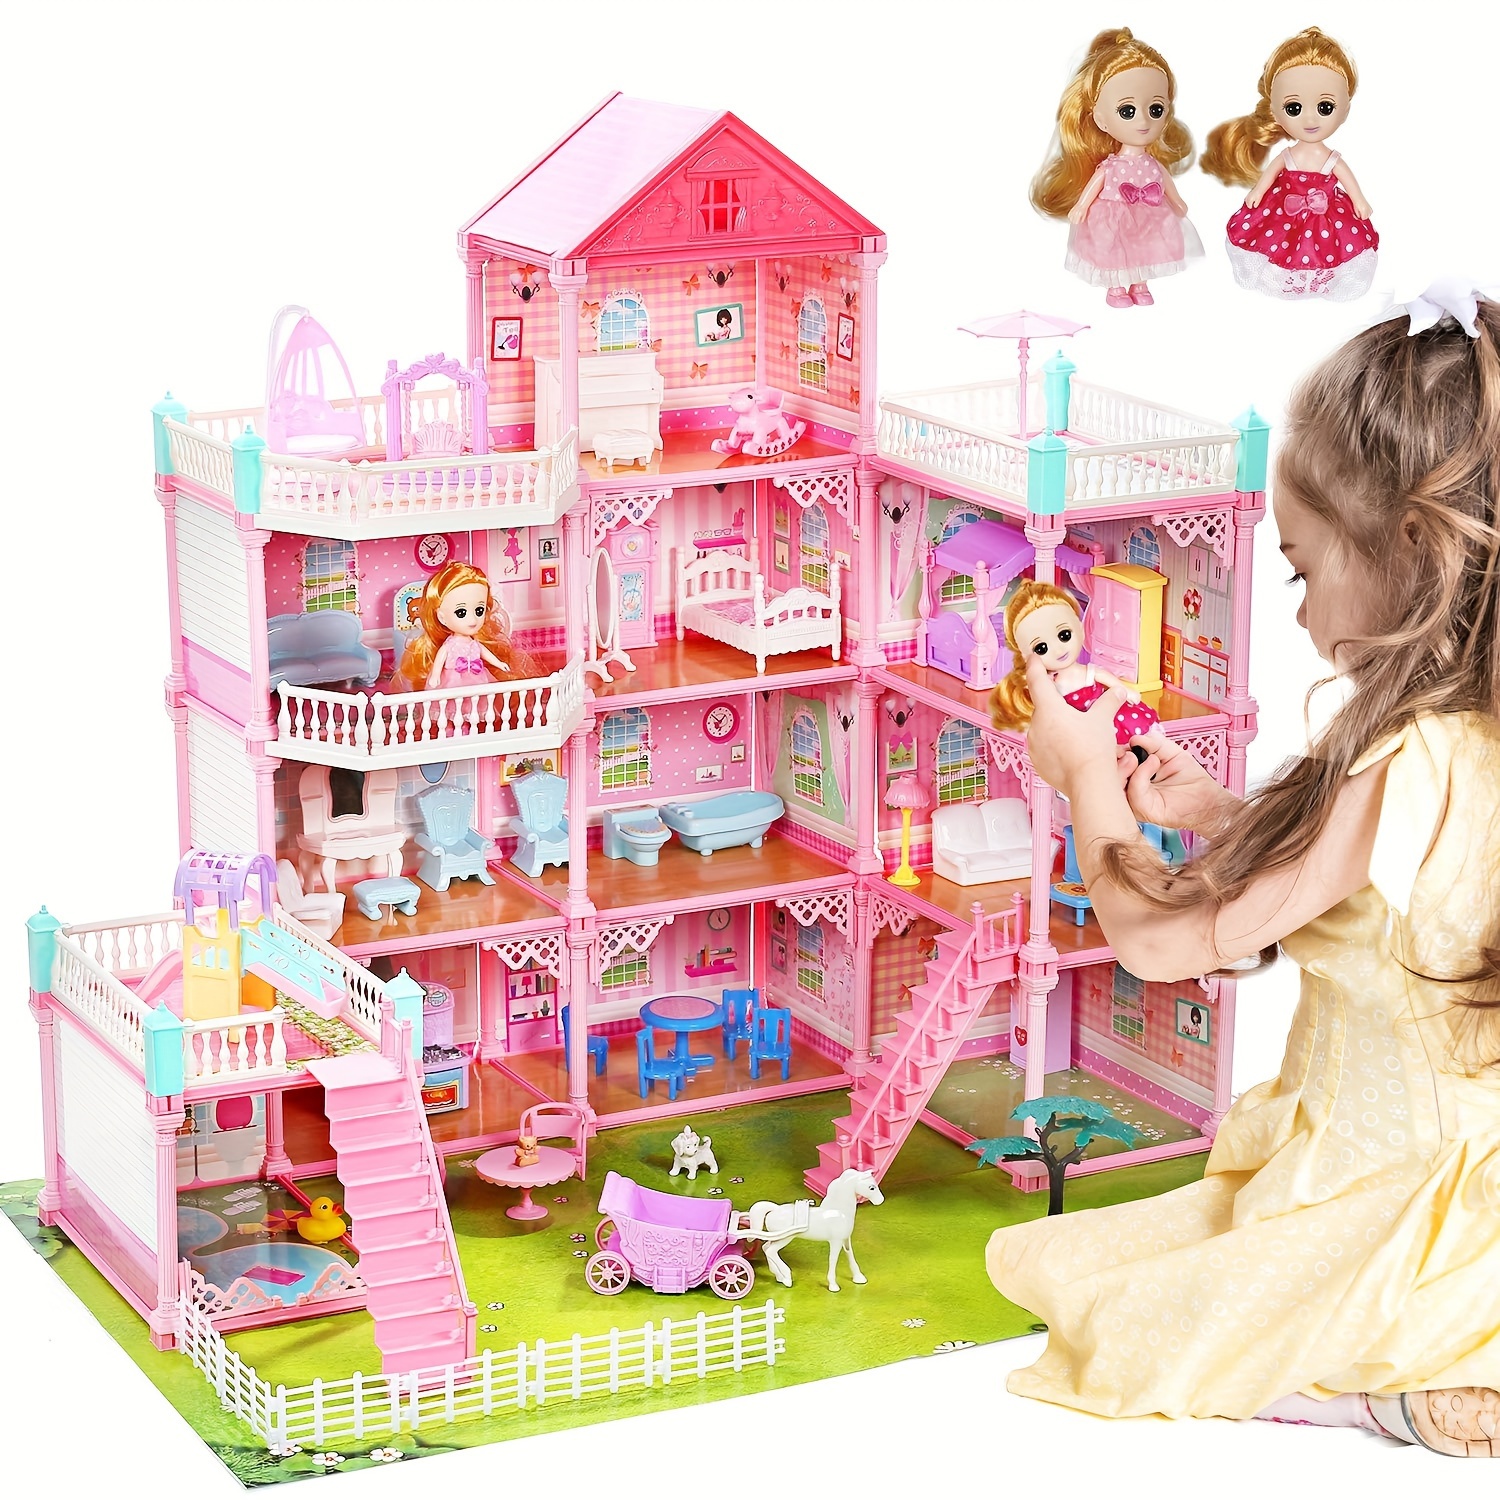 Barbie La Chambre de Barbie Coffret poupée, meubles et accessoires